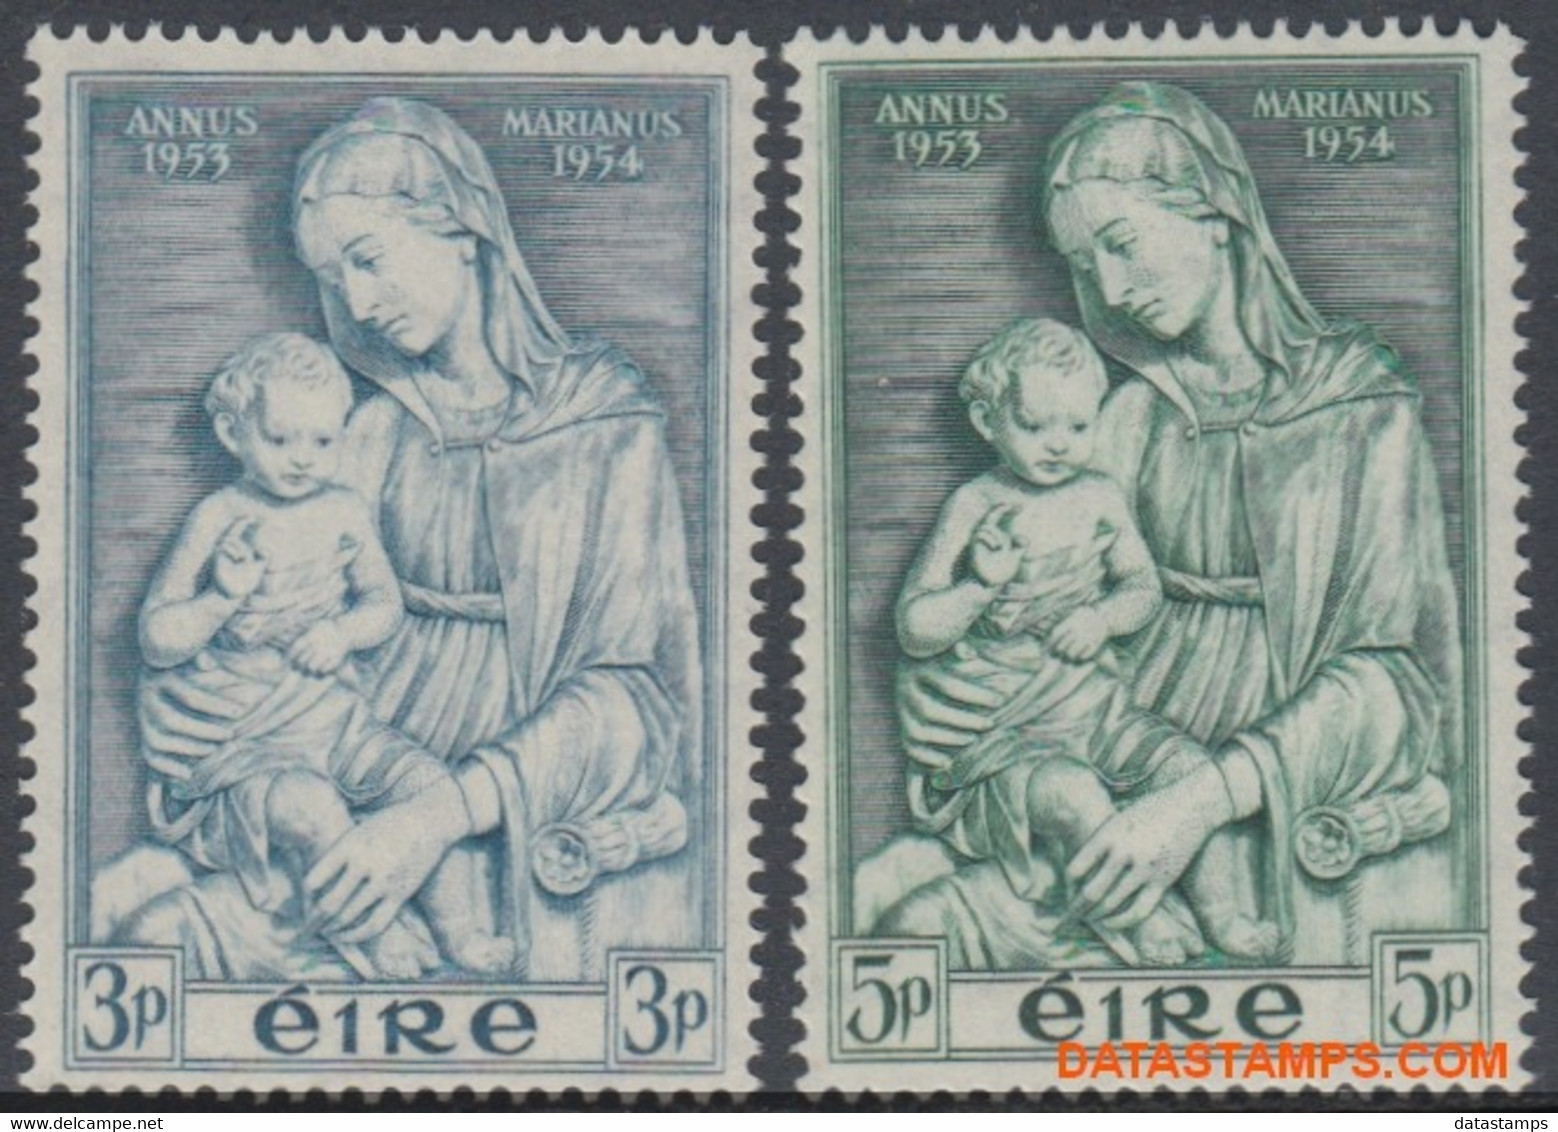 Ierland 1954 - Mi:120/121, Yv:122/123, Stamp - XX - Maria Year - Nuevos